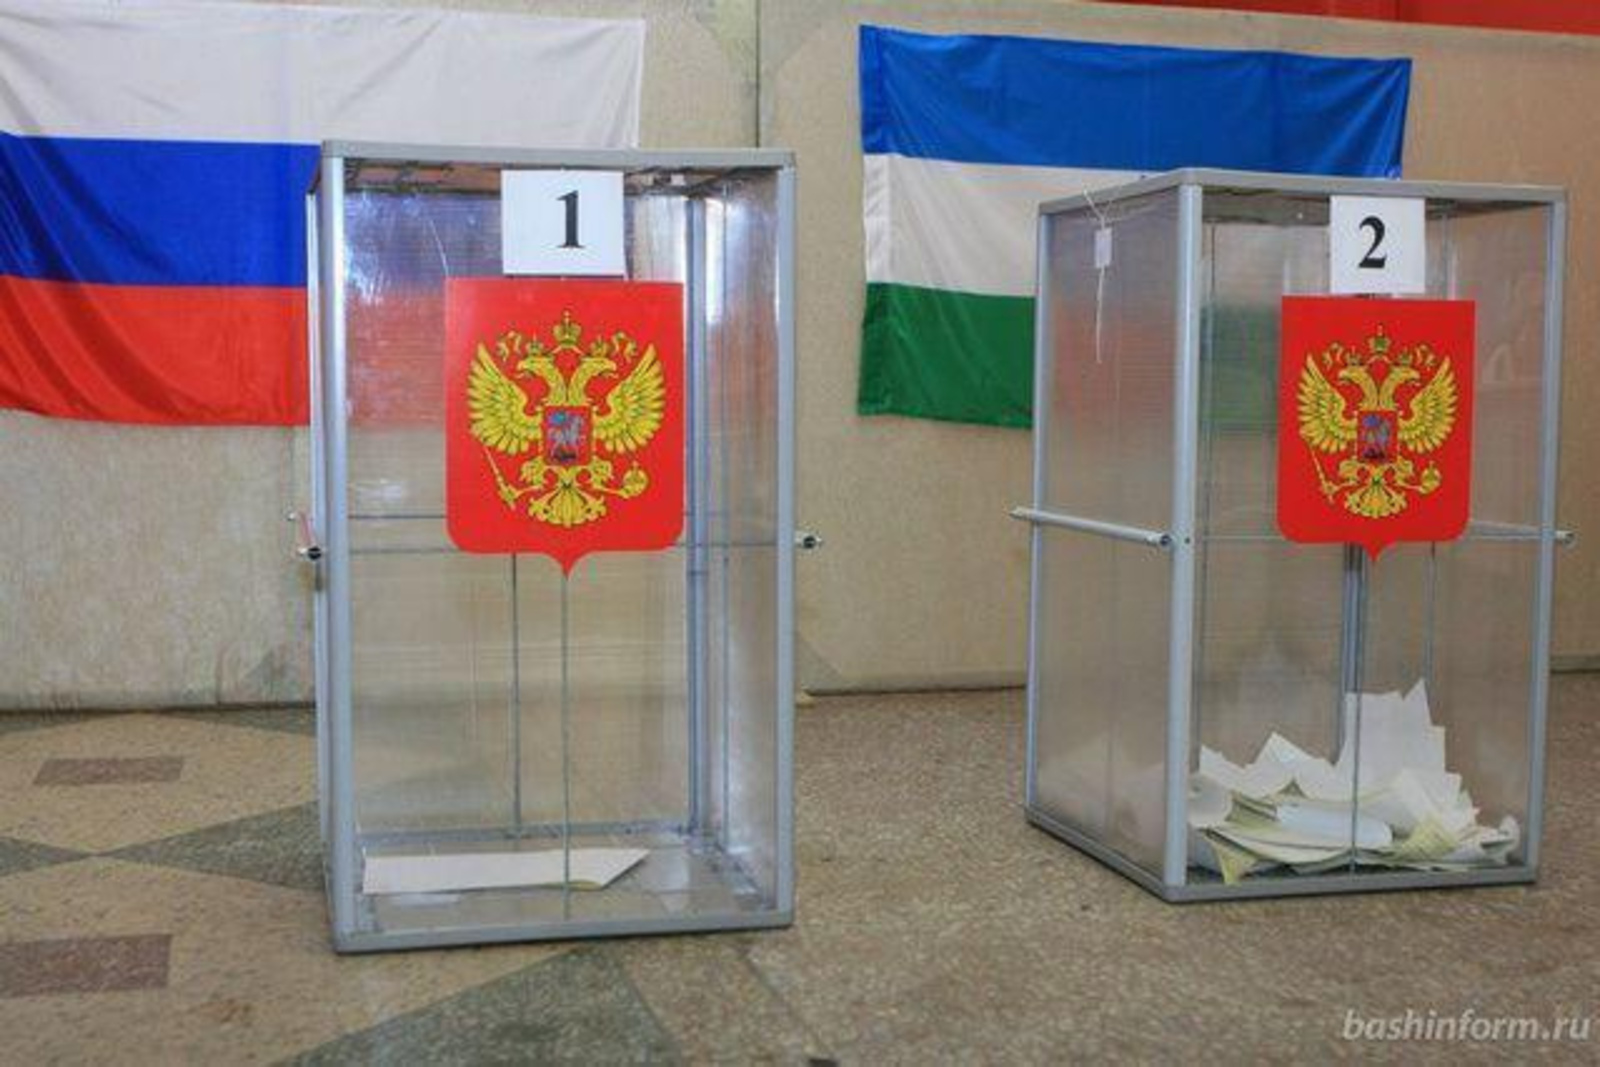 Почти 1,8 млн жителей Башкирии проголосовали на выборах к 15 часам 19 сентября